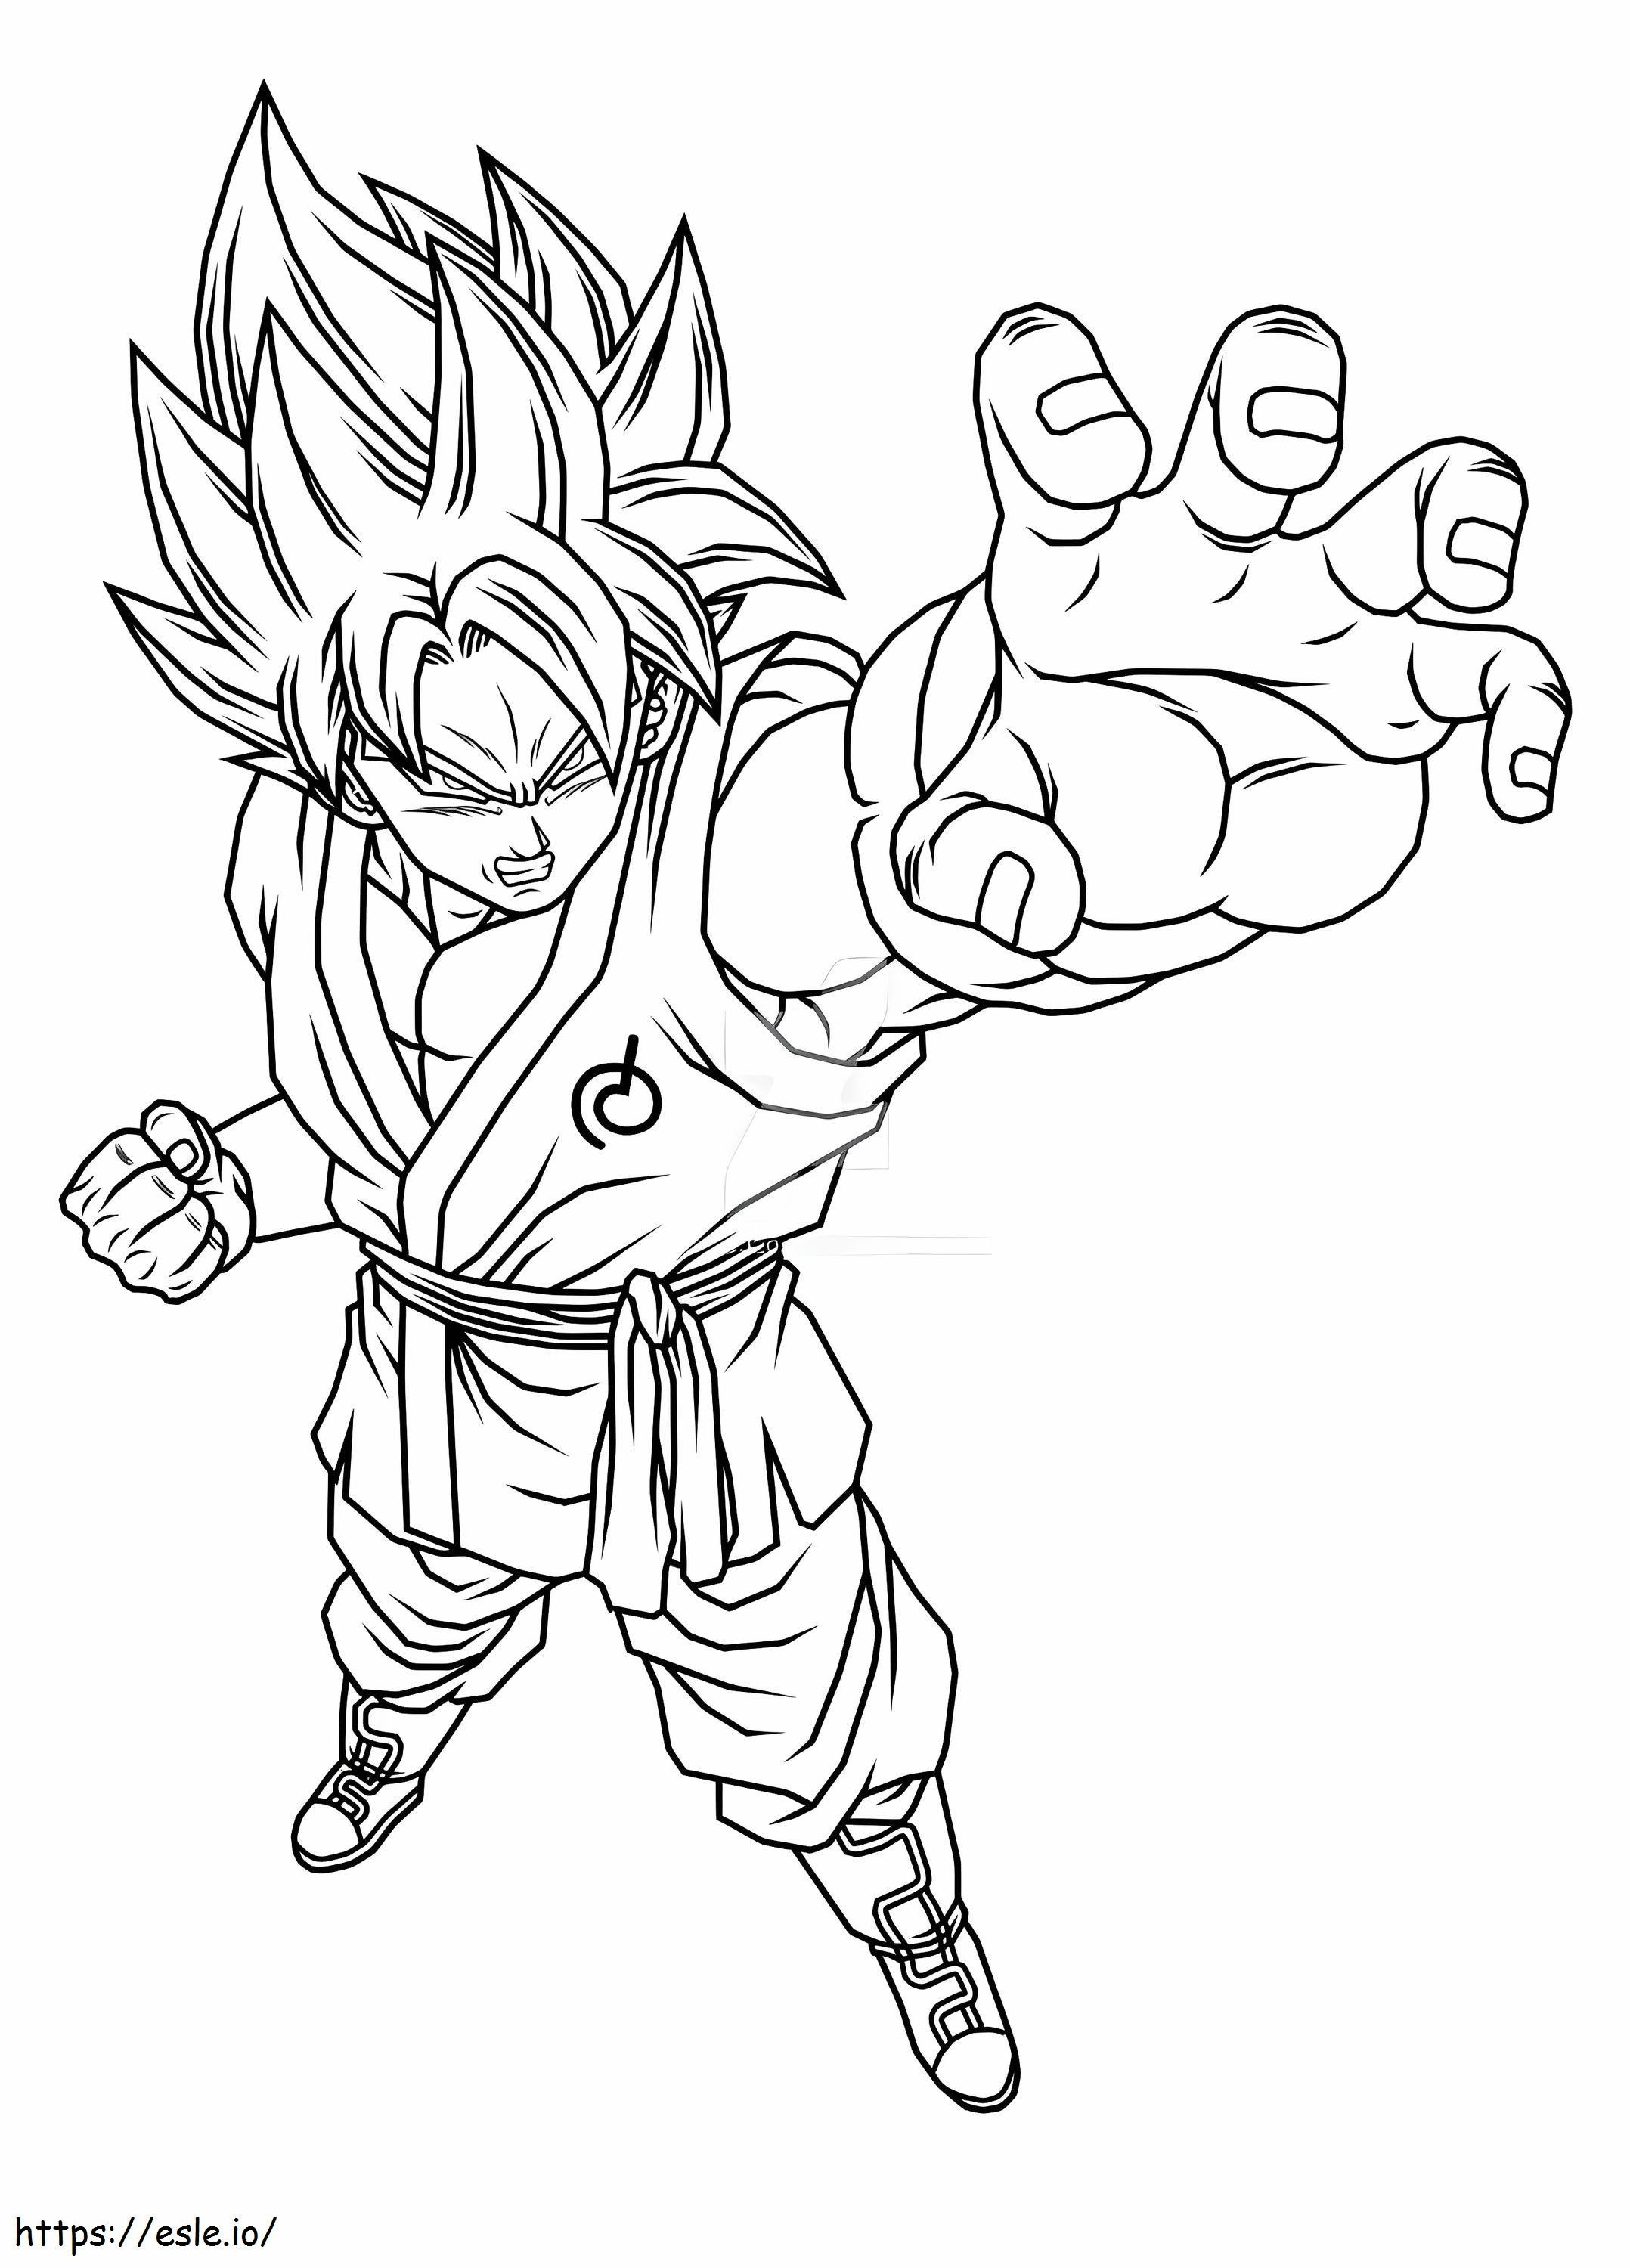 Wütender Son-Goku ausmalbilder